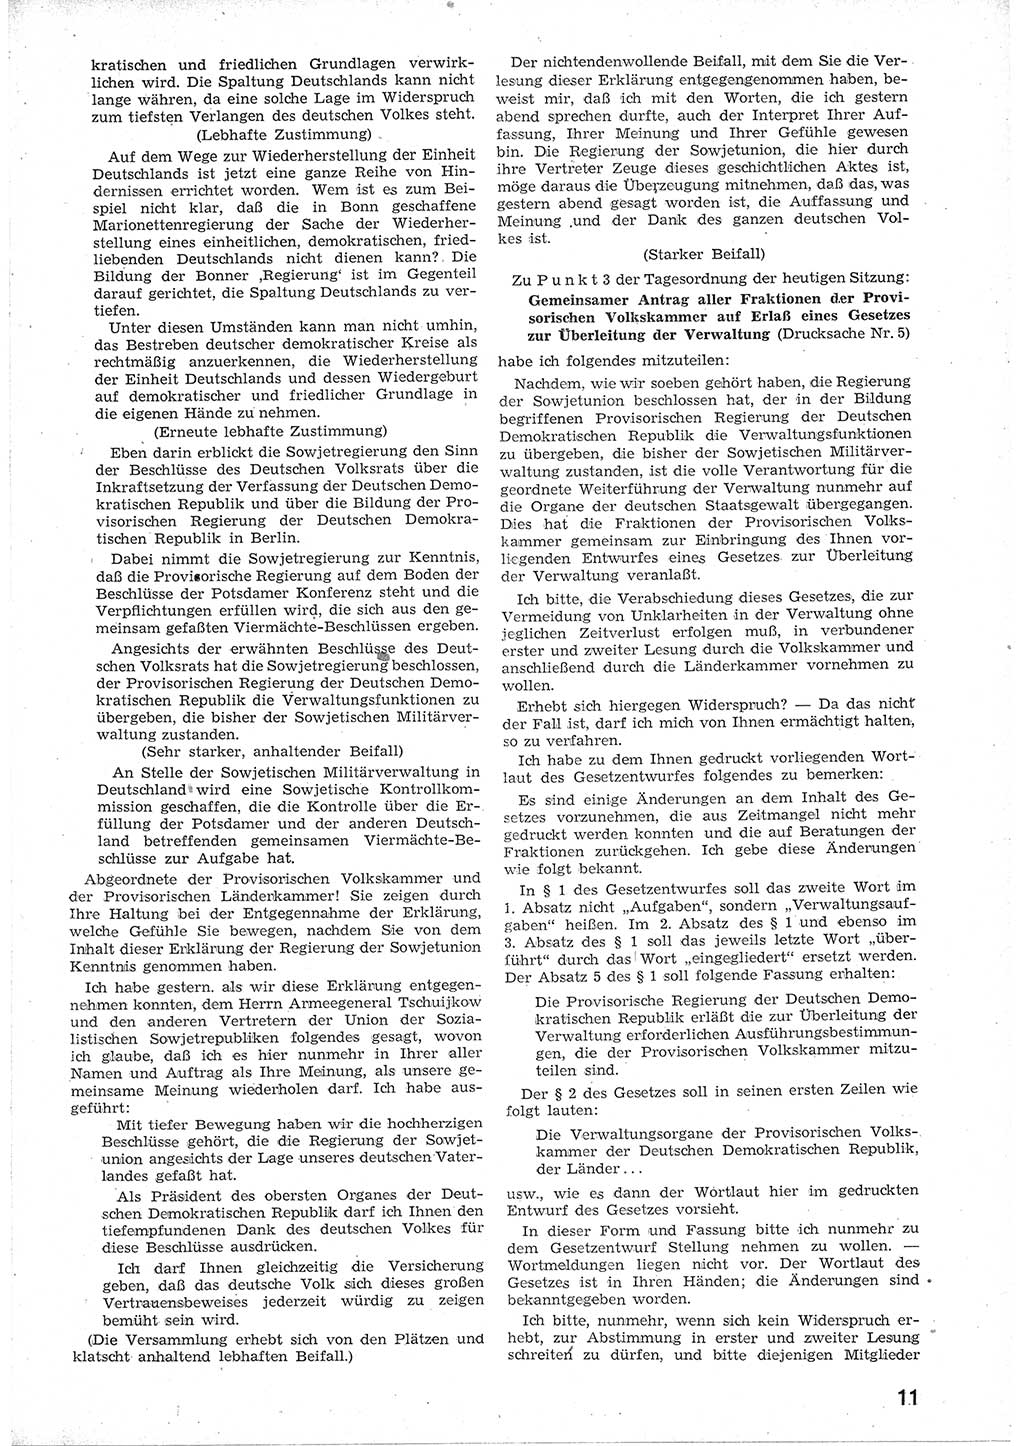 Provisorische Volkskammer (VK) der Deutschen Demokratischen Republik (DDR) 1949-1950, Dokument 23 (Prov. VK DDR 1949-1950, Dok. 23)